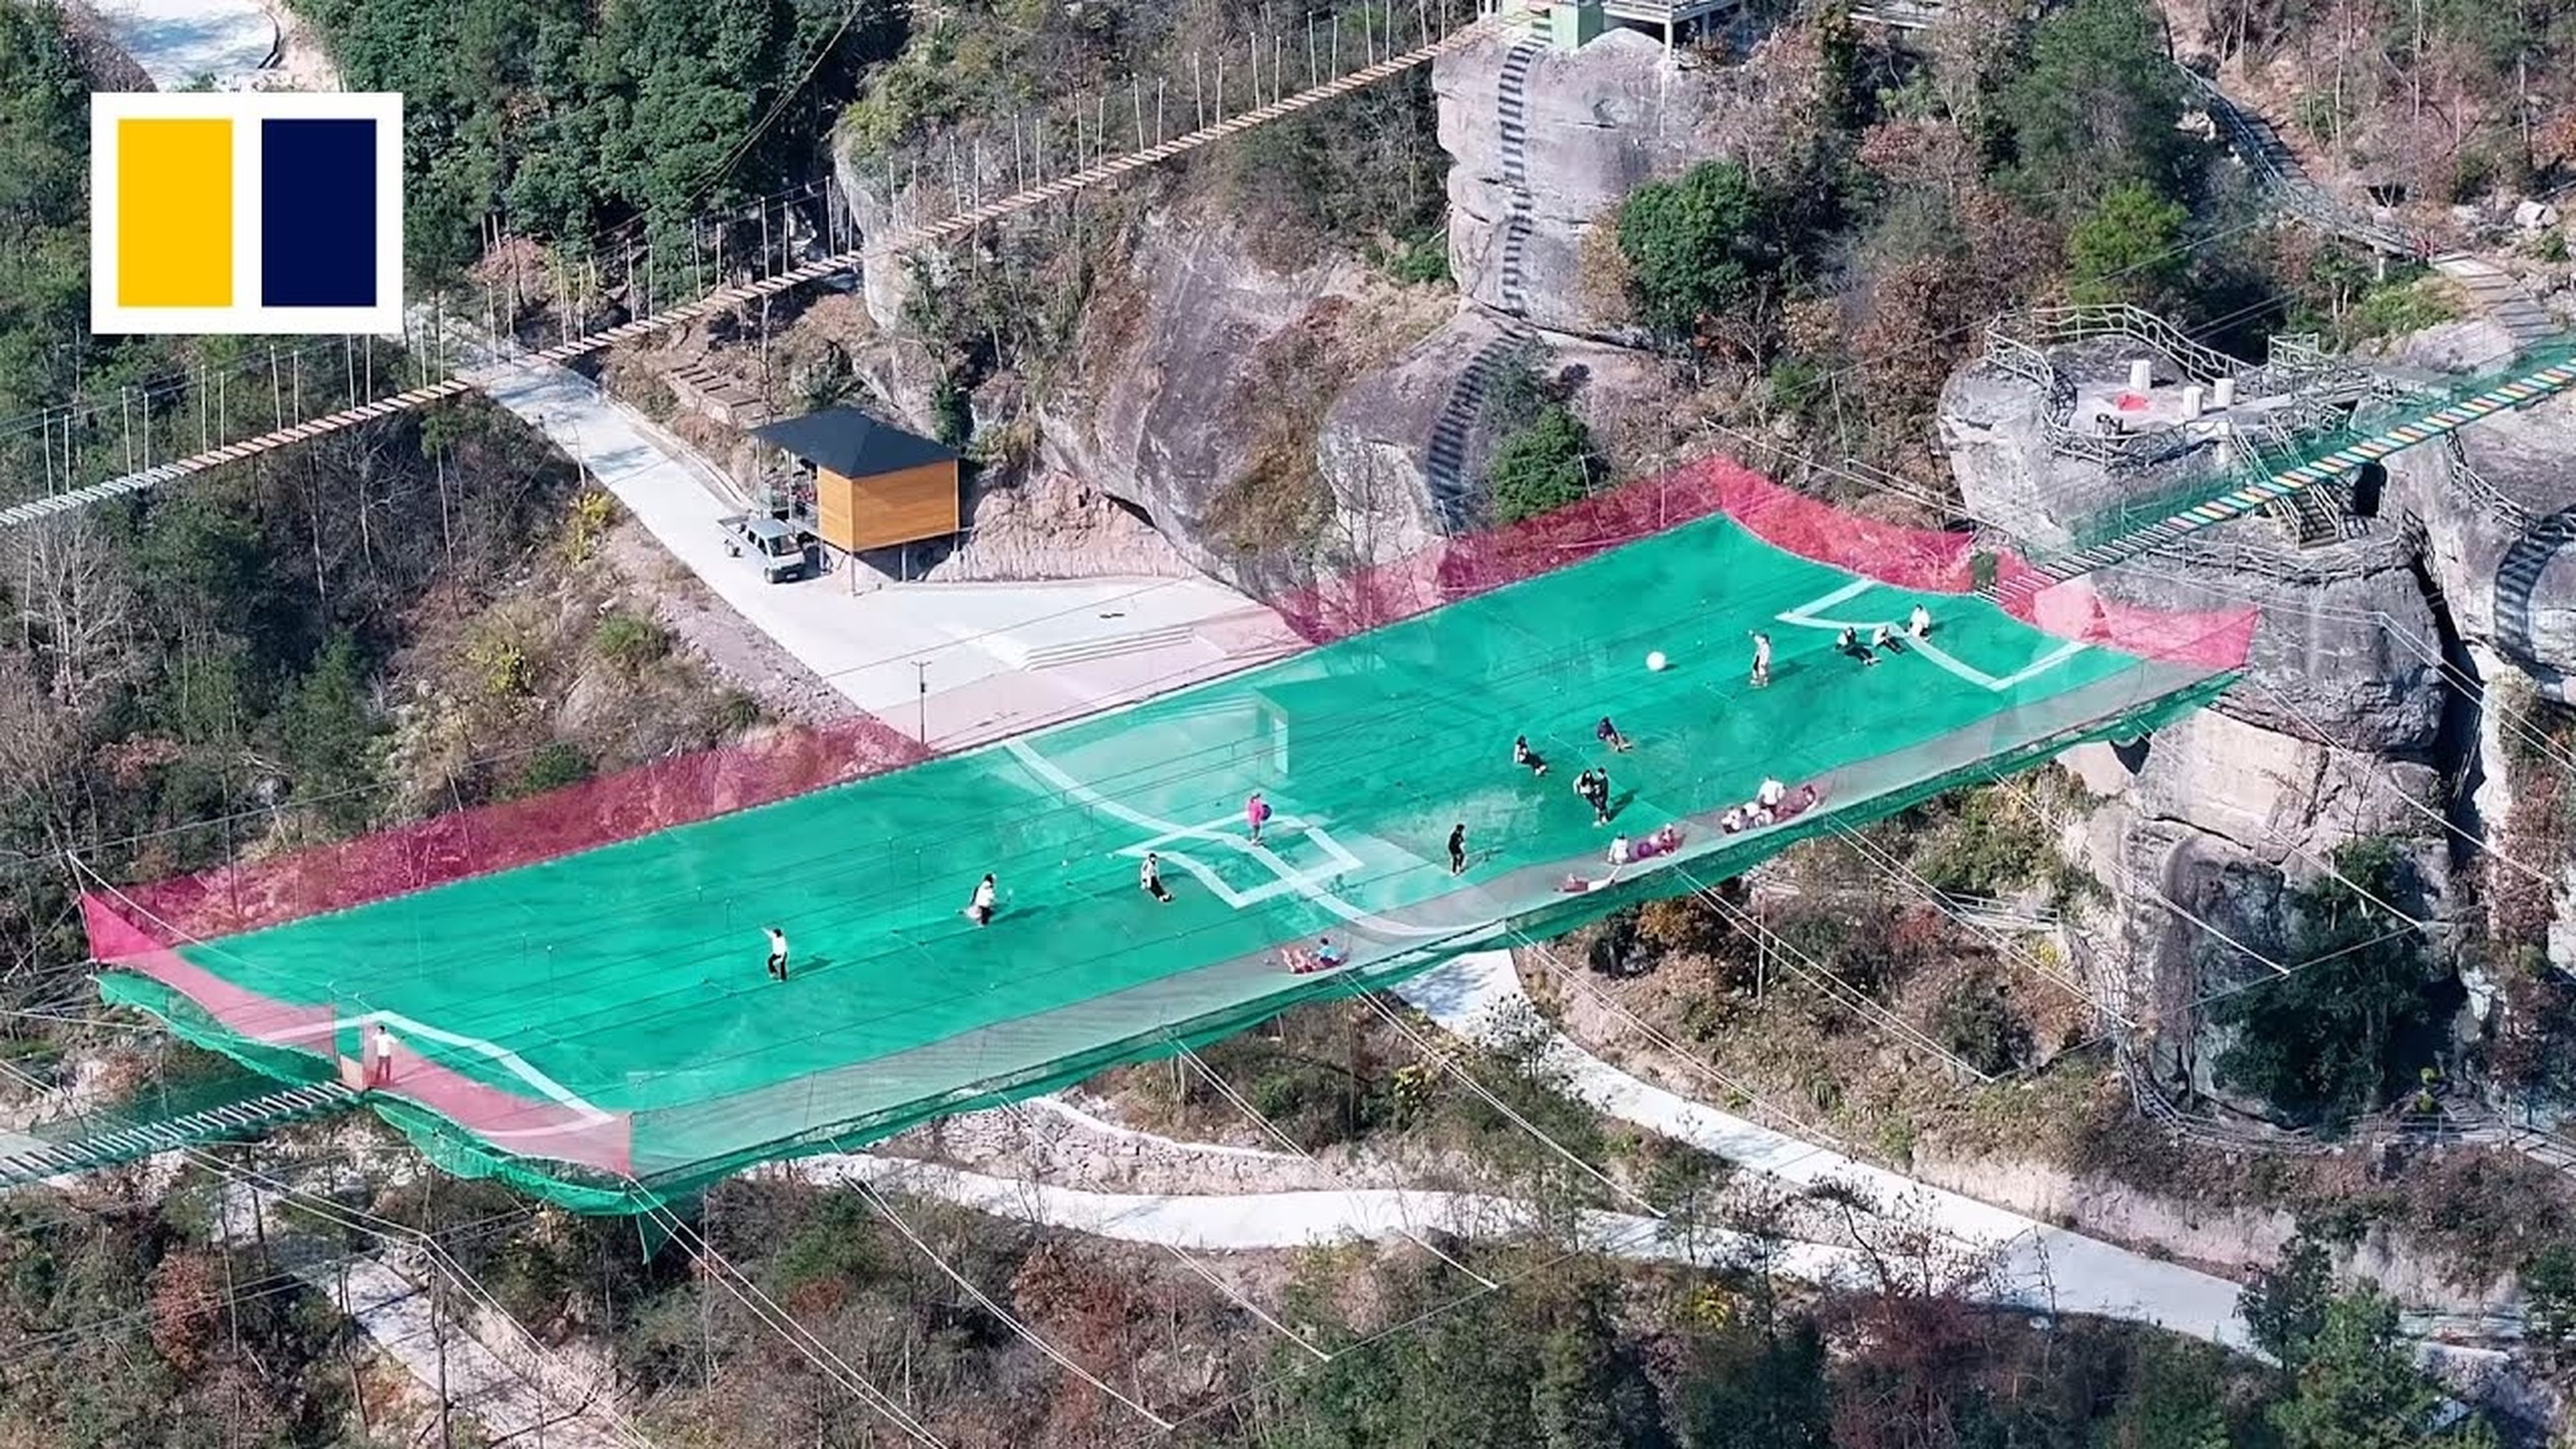 Una red en forma de campo de fútbol para niños colgando a 200 metros de altura, desata la polémica en China